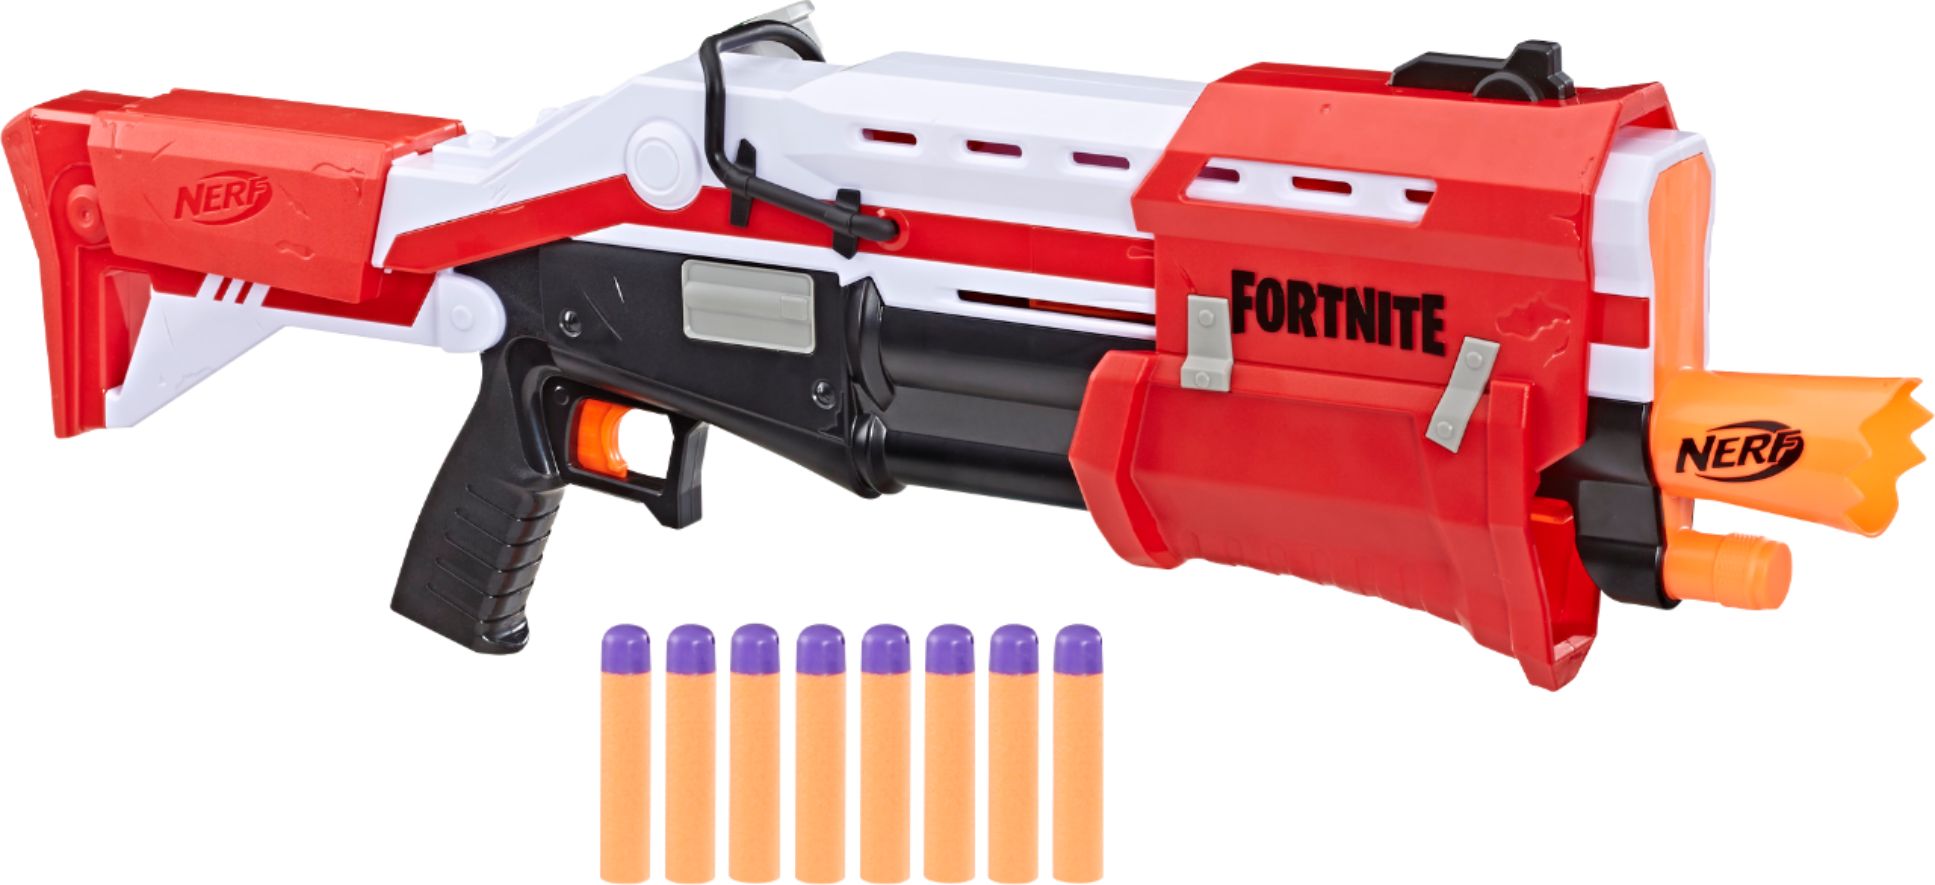 Fortnite Shotgun Blaster Nerf Best Buy Nerf Fortnite Ts Blaster E6159